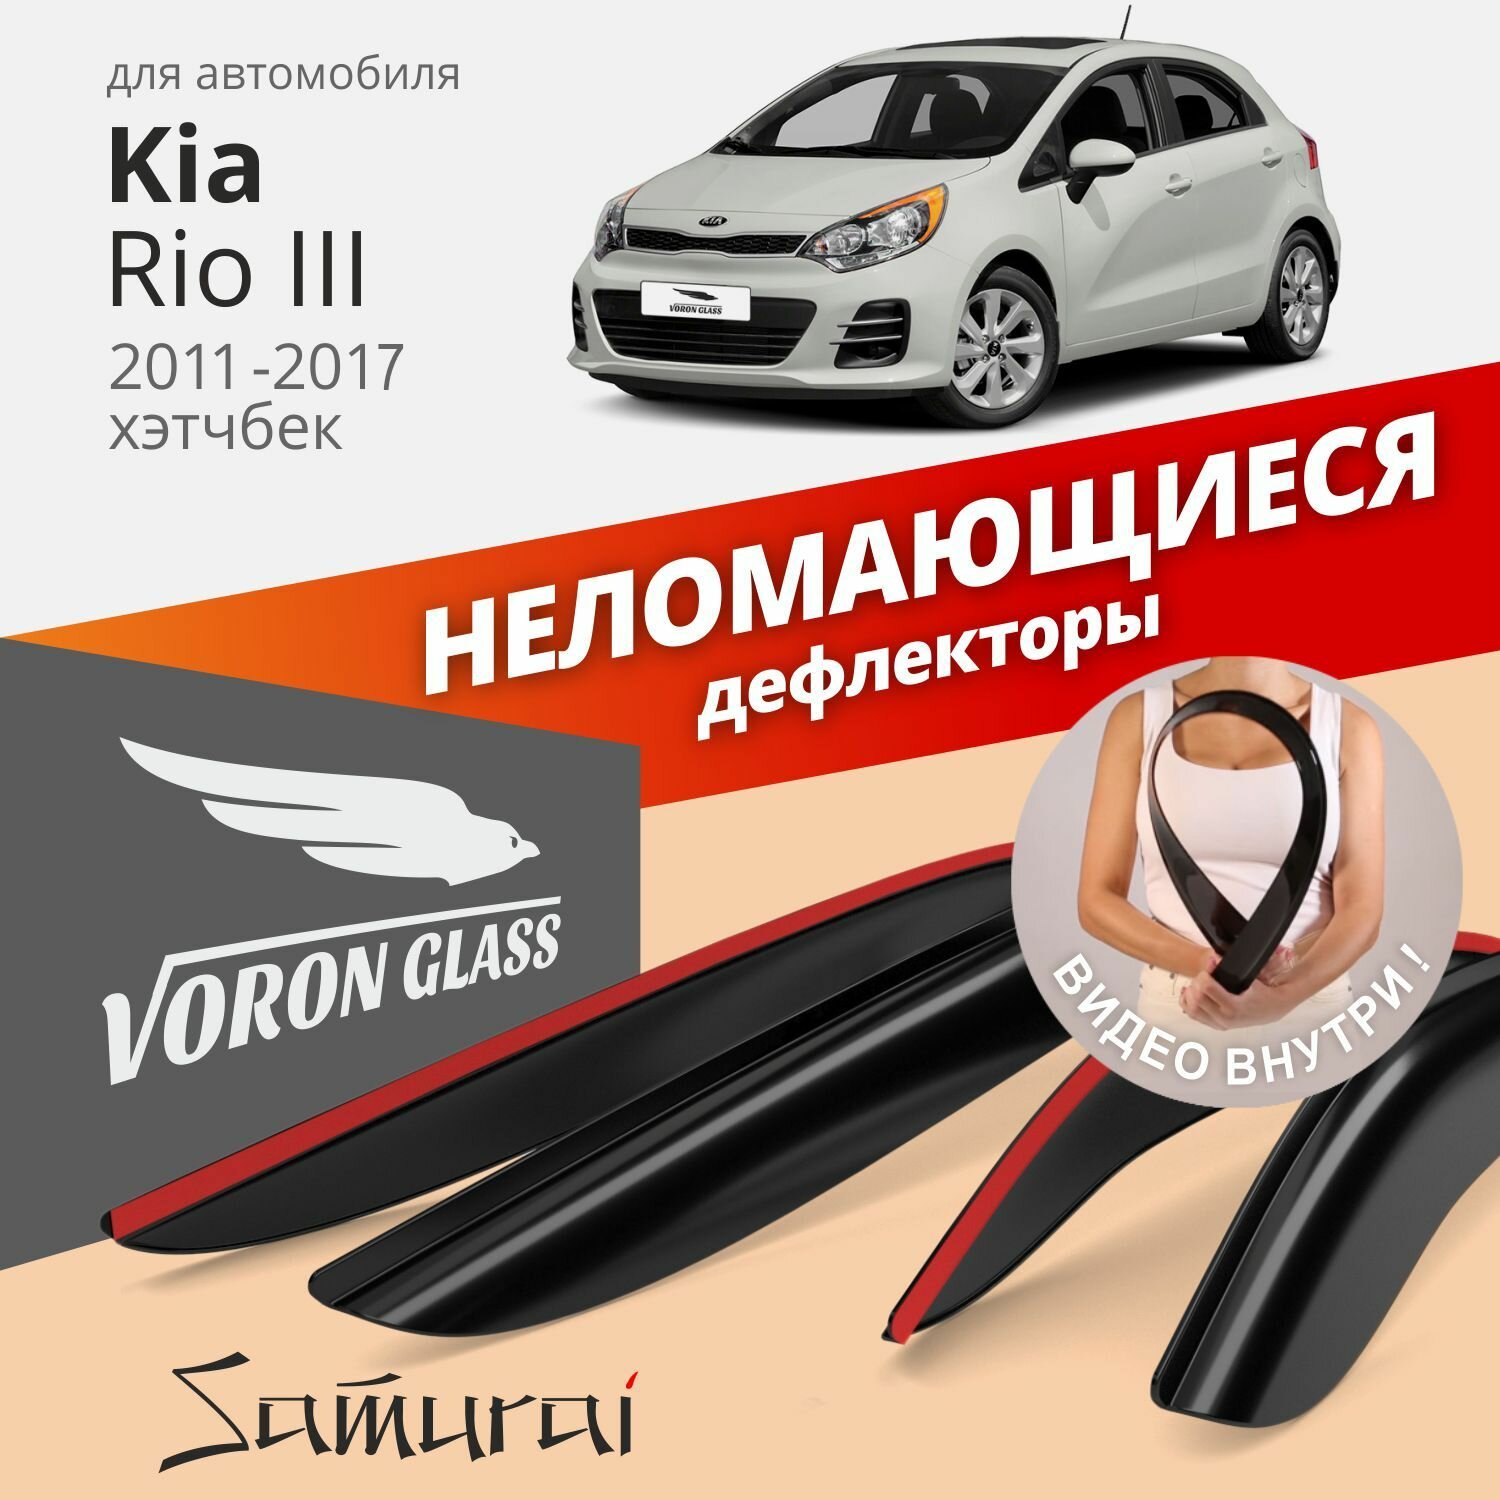 Дефлекторы окон неломающиеся Voron Glass серия Samurai для Kia Rio 2011-2017 хэтчбек накладные 4шт